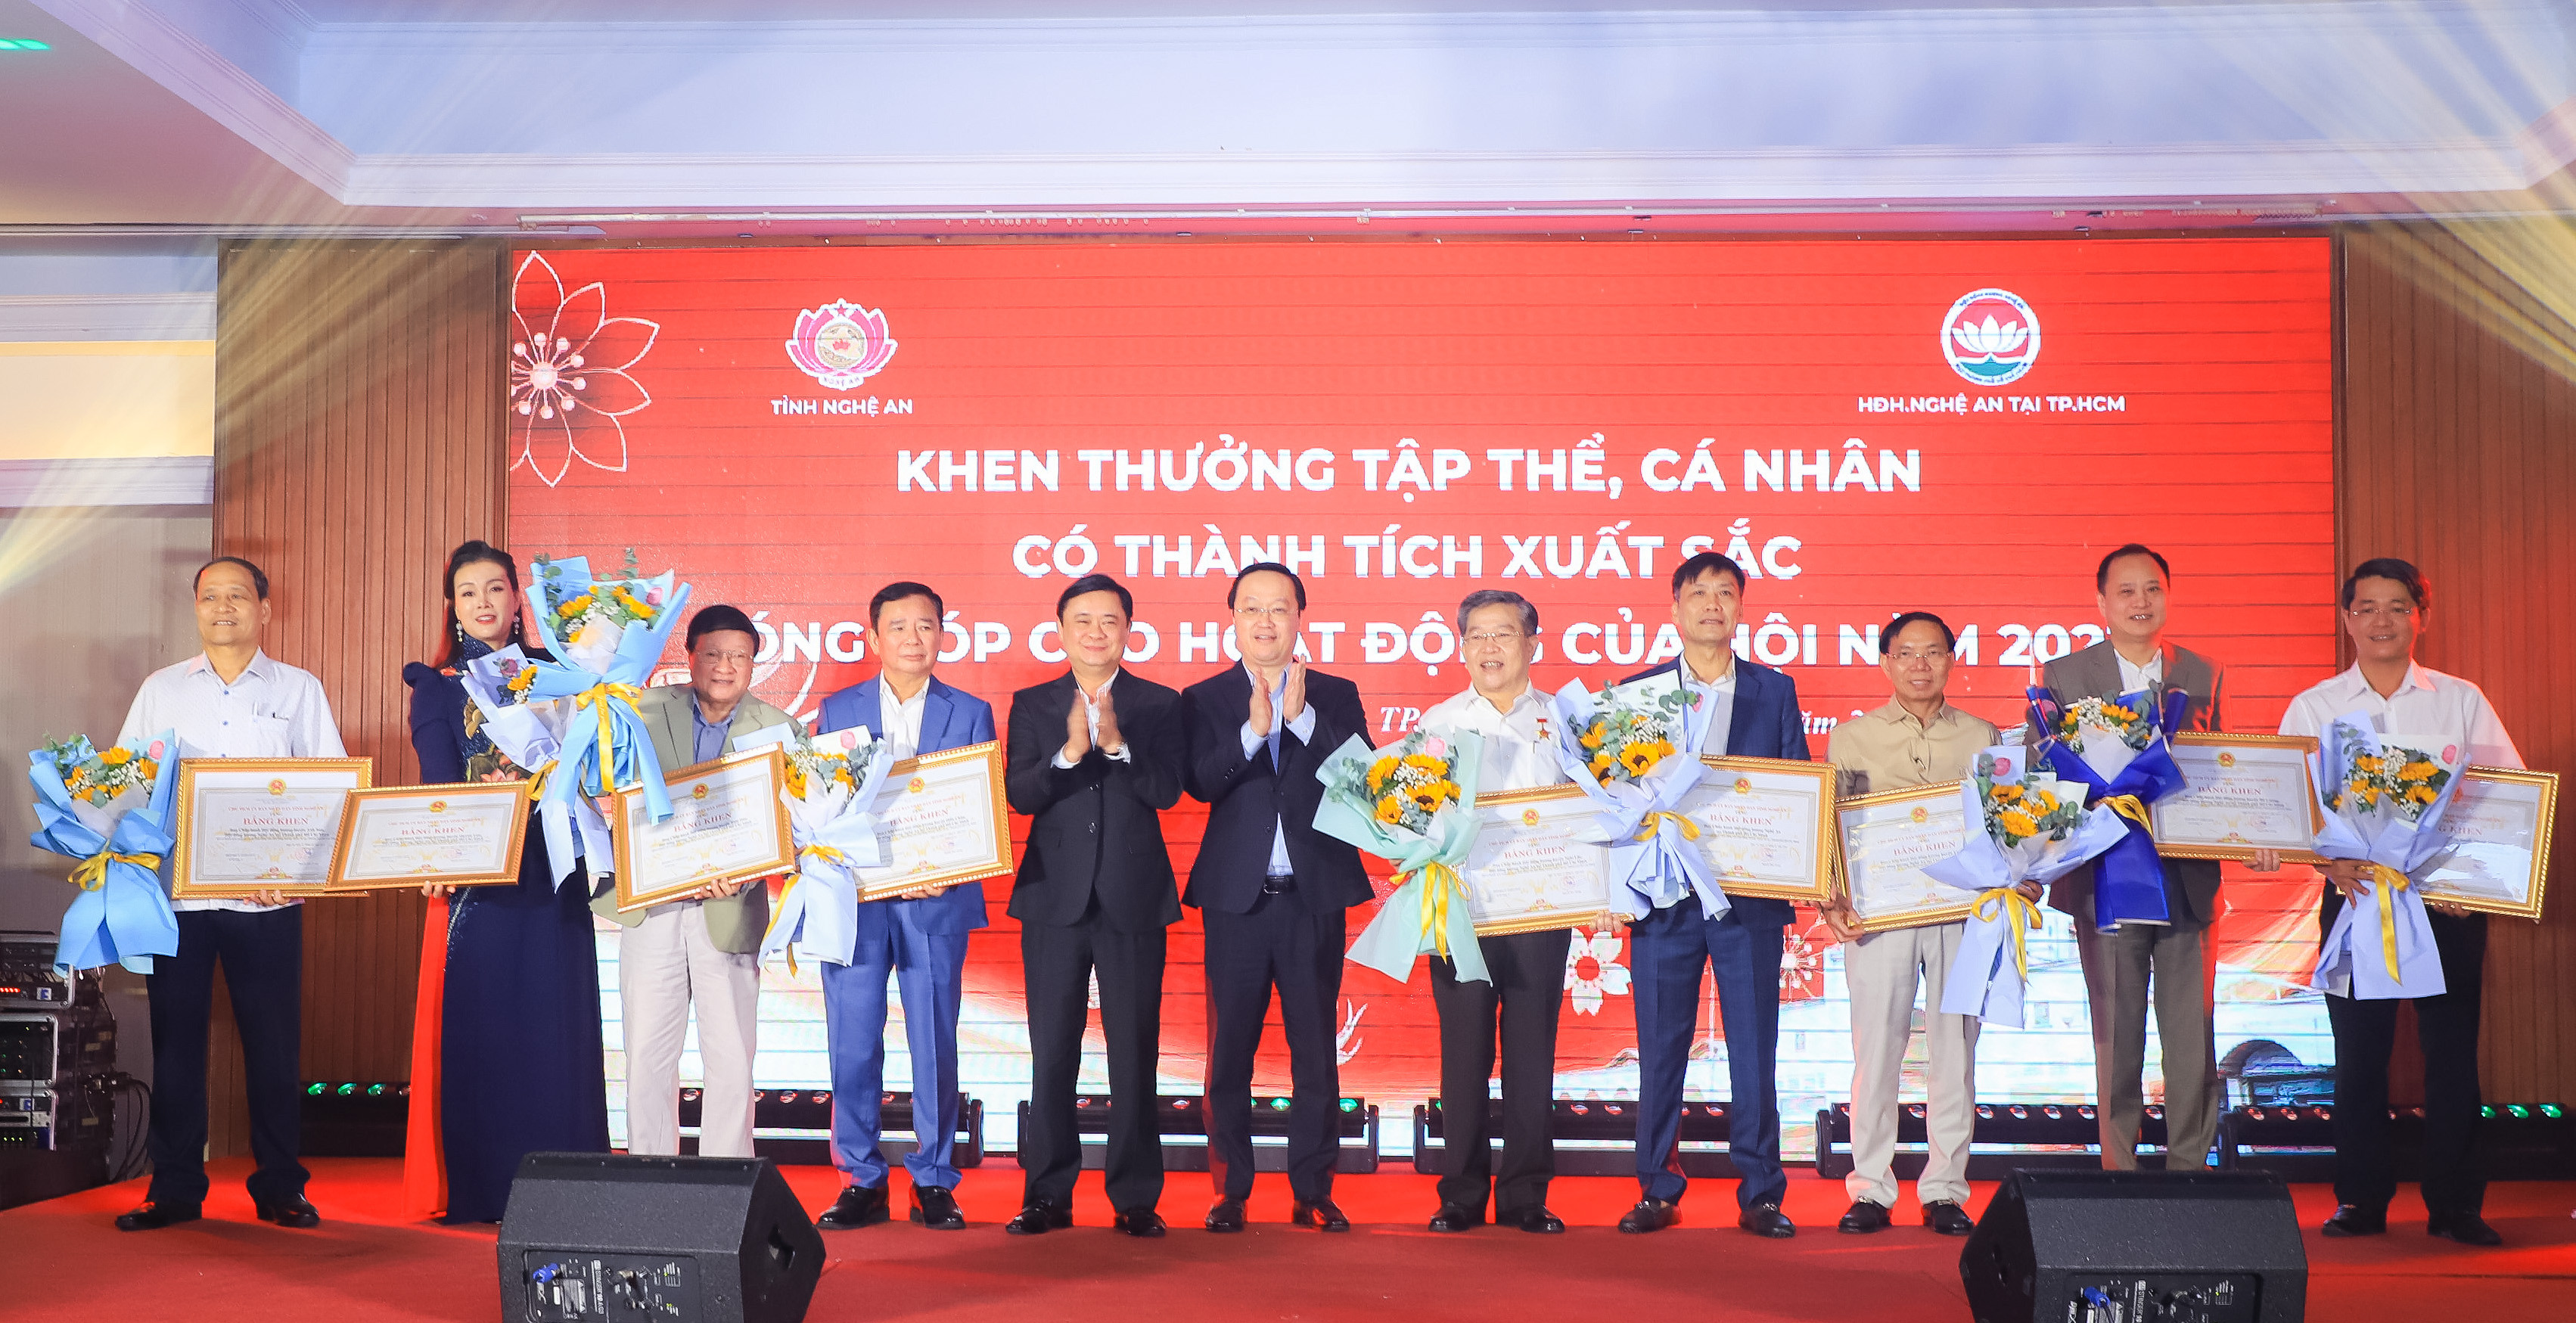 Bí thư Tỉnh ủy Thái Thanh Quý và Chủ tịch UBND tỉnh Nguyễn Đức Trung trao tặng Bằng khen cho 9 tập thể đã có thành tích xuất sắc trong hoạt động của Hội đồng hương Nghệ An tại TP. Hồ Chí Minh.